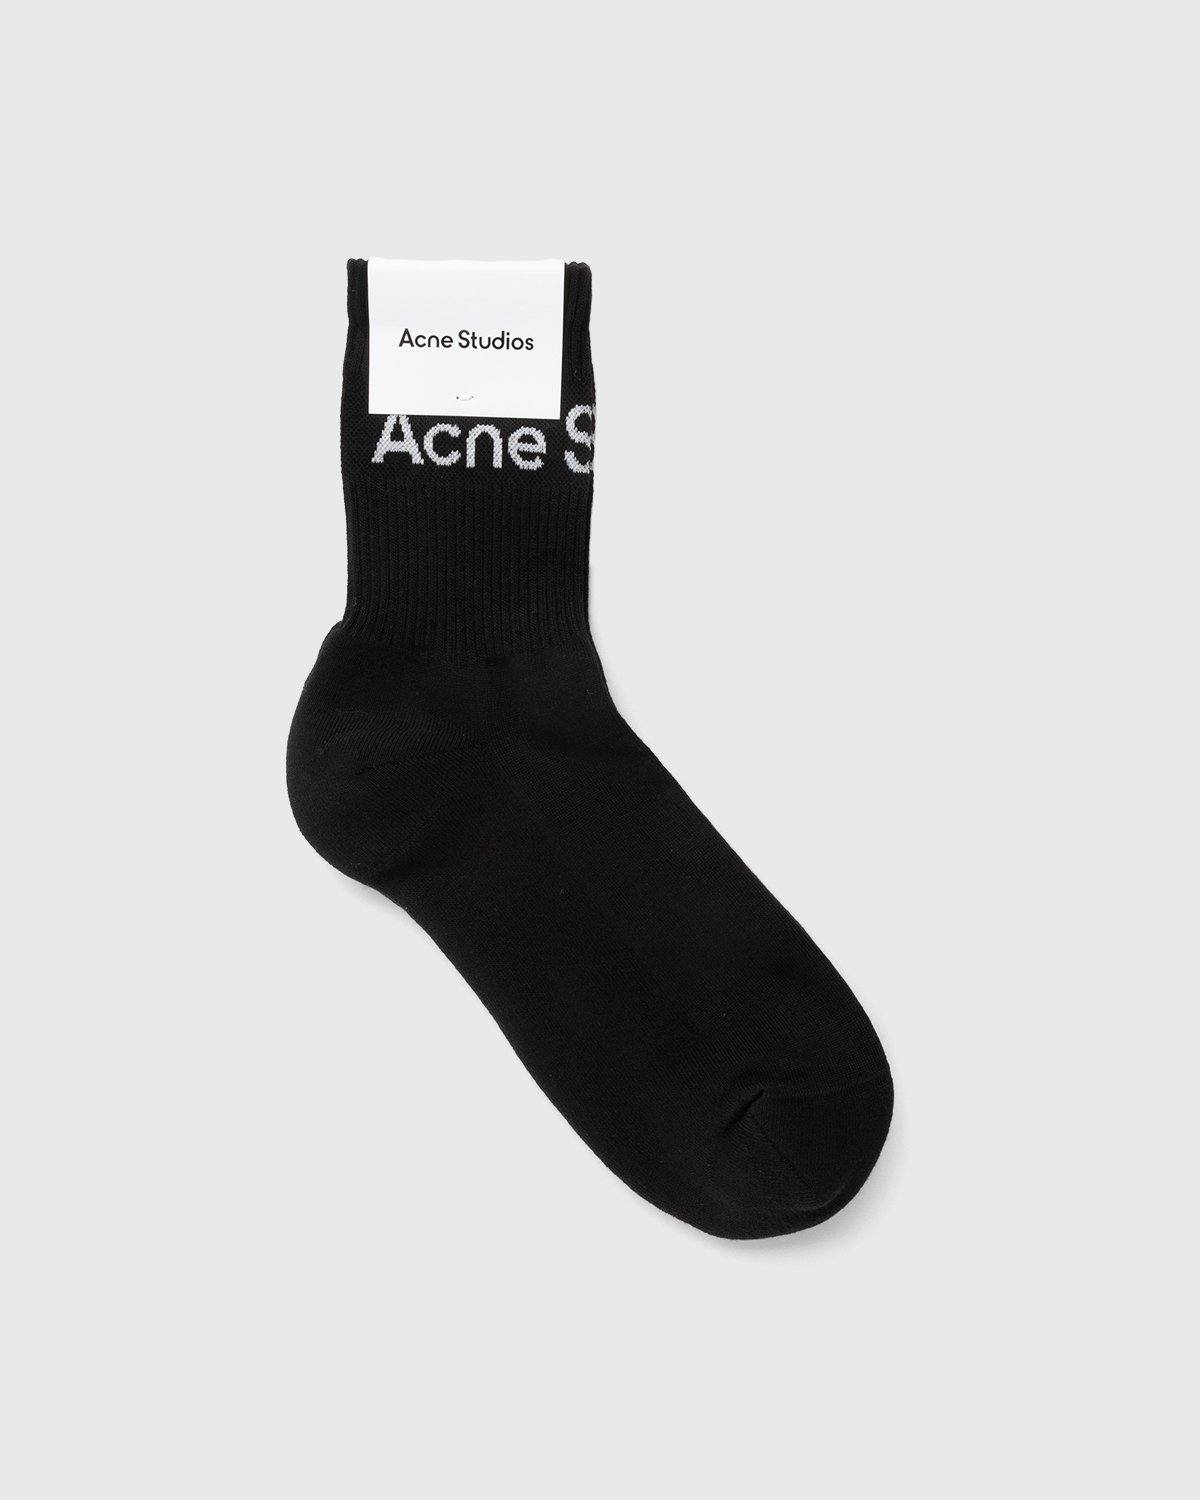 Acne Studios - Ribbed Logo Socks Black Sati/Grey - Accessories - Black - Image 2